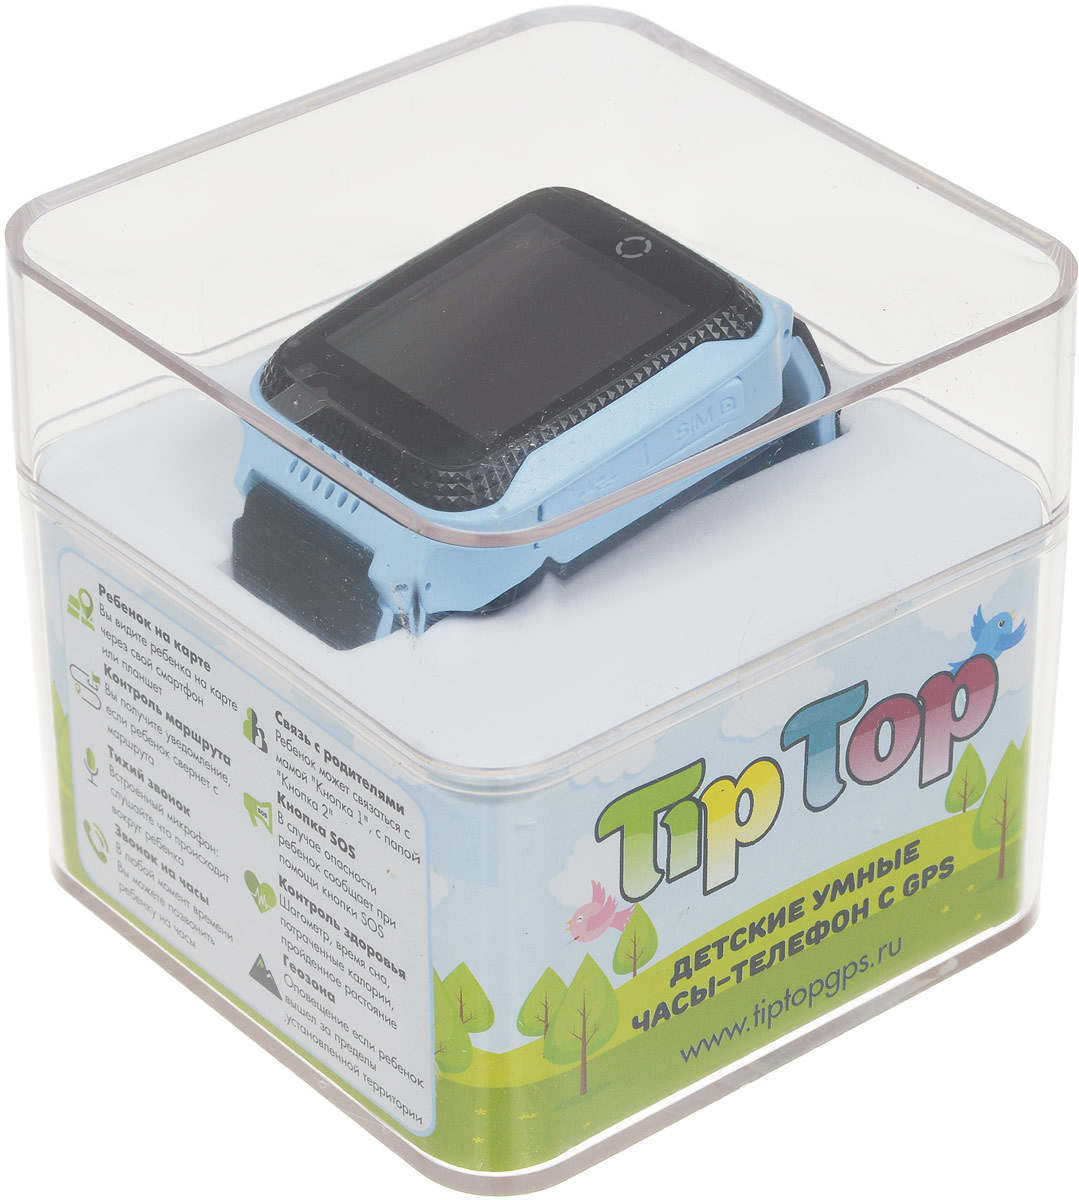 фото Детские часы-телефон TipTop 500ЦФС, голубой